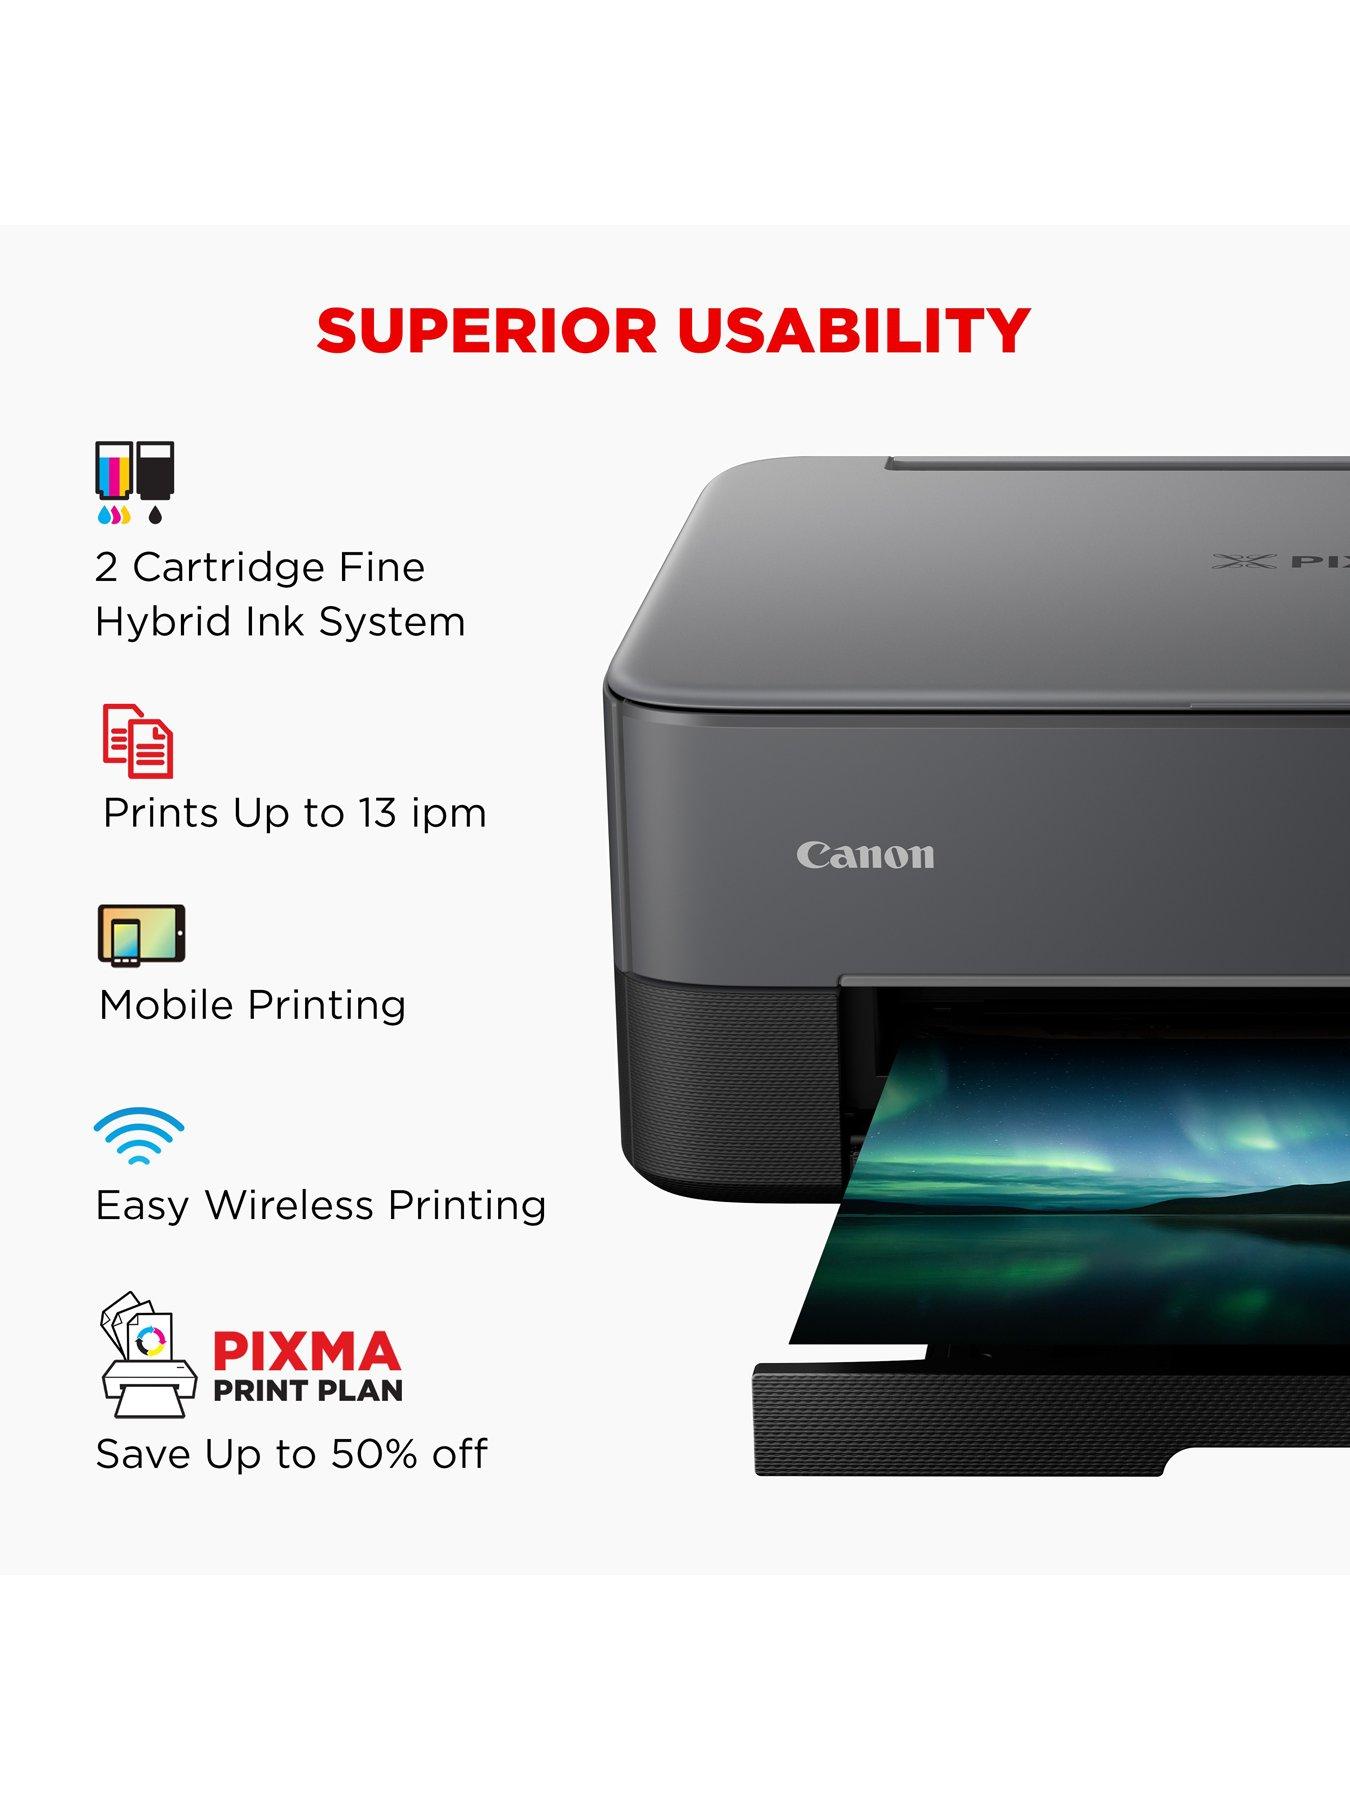 Canon PIXMA TS5350i Three-in-One Wireless Wi-Fi Printer - Black